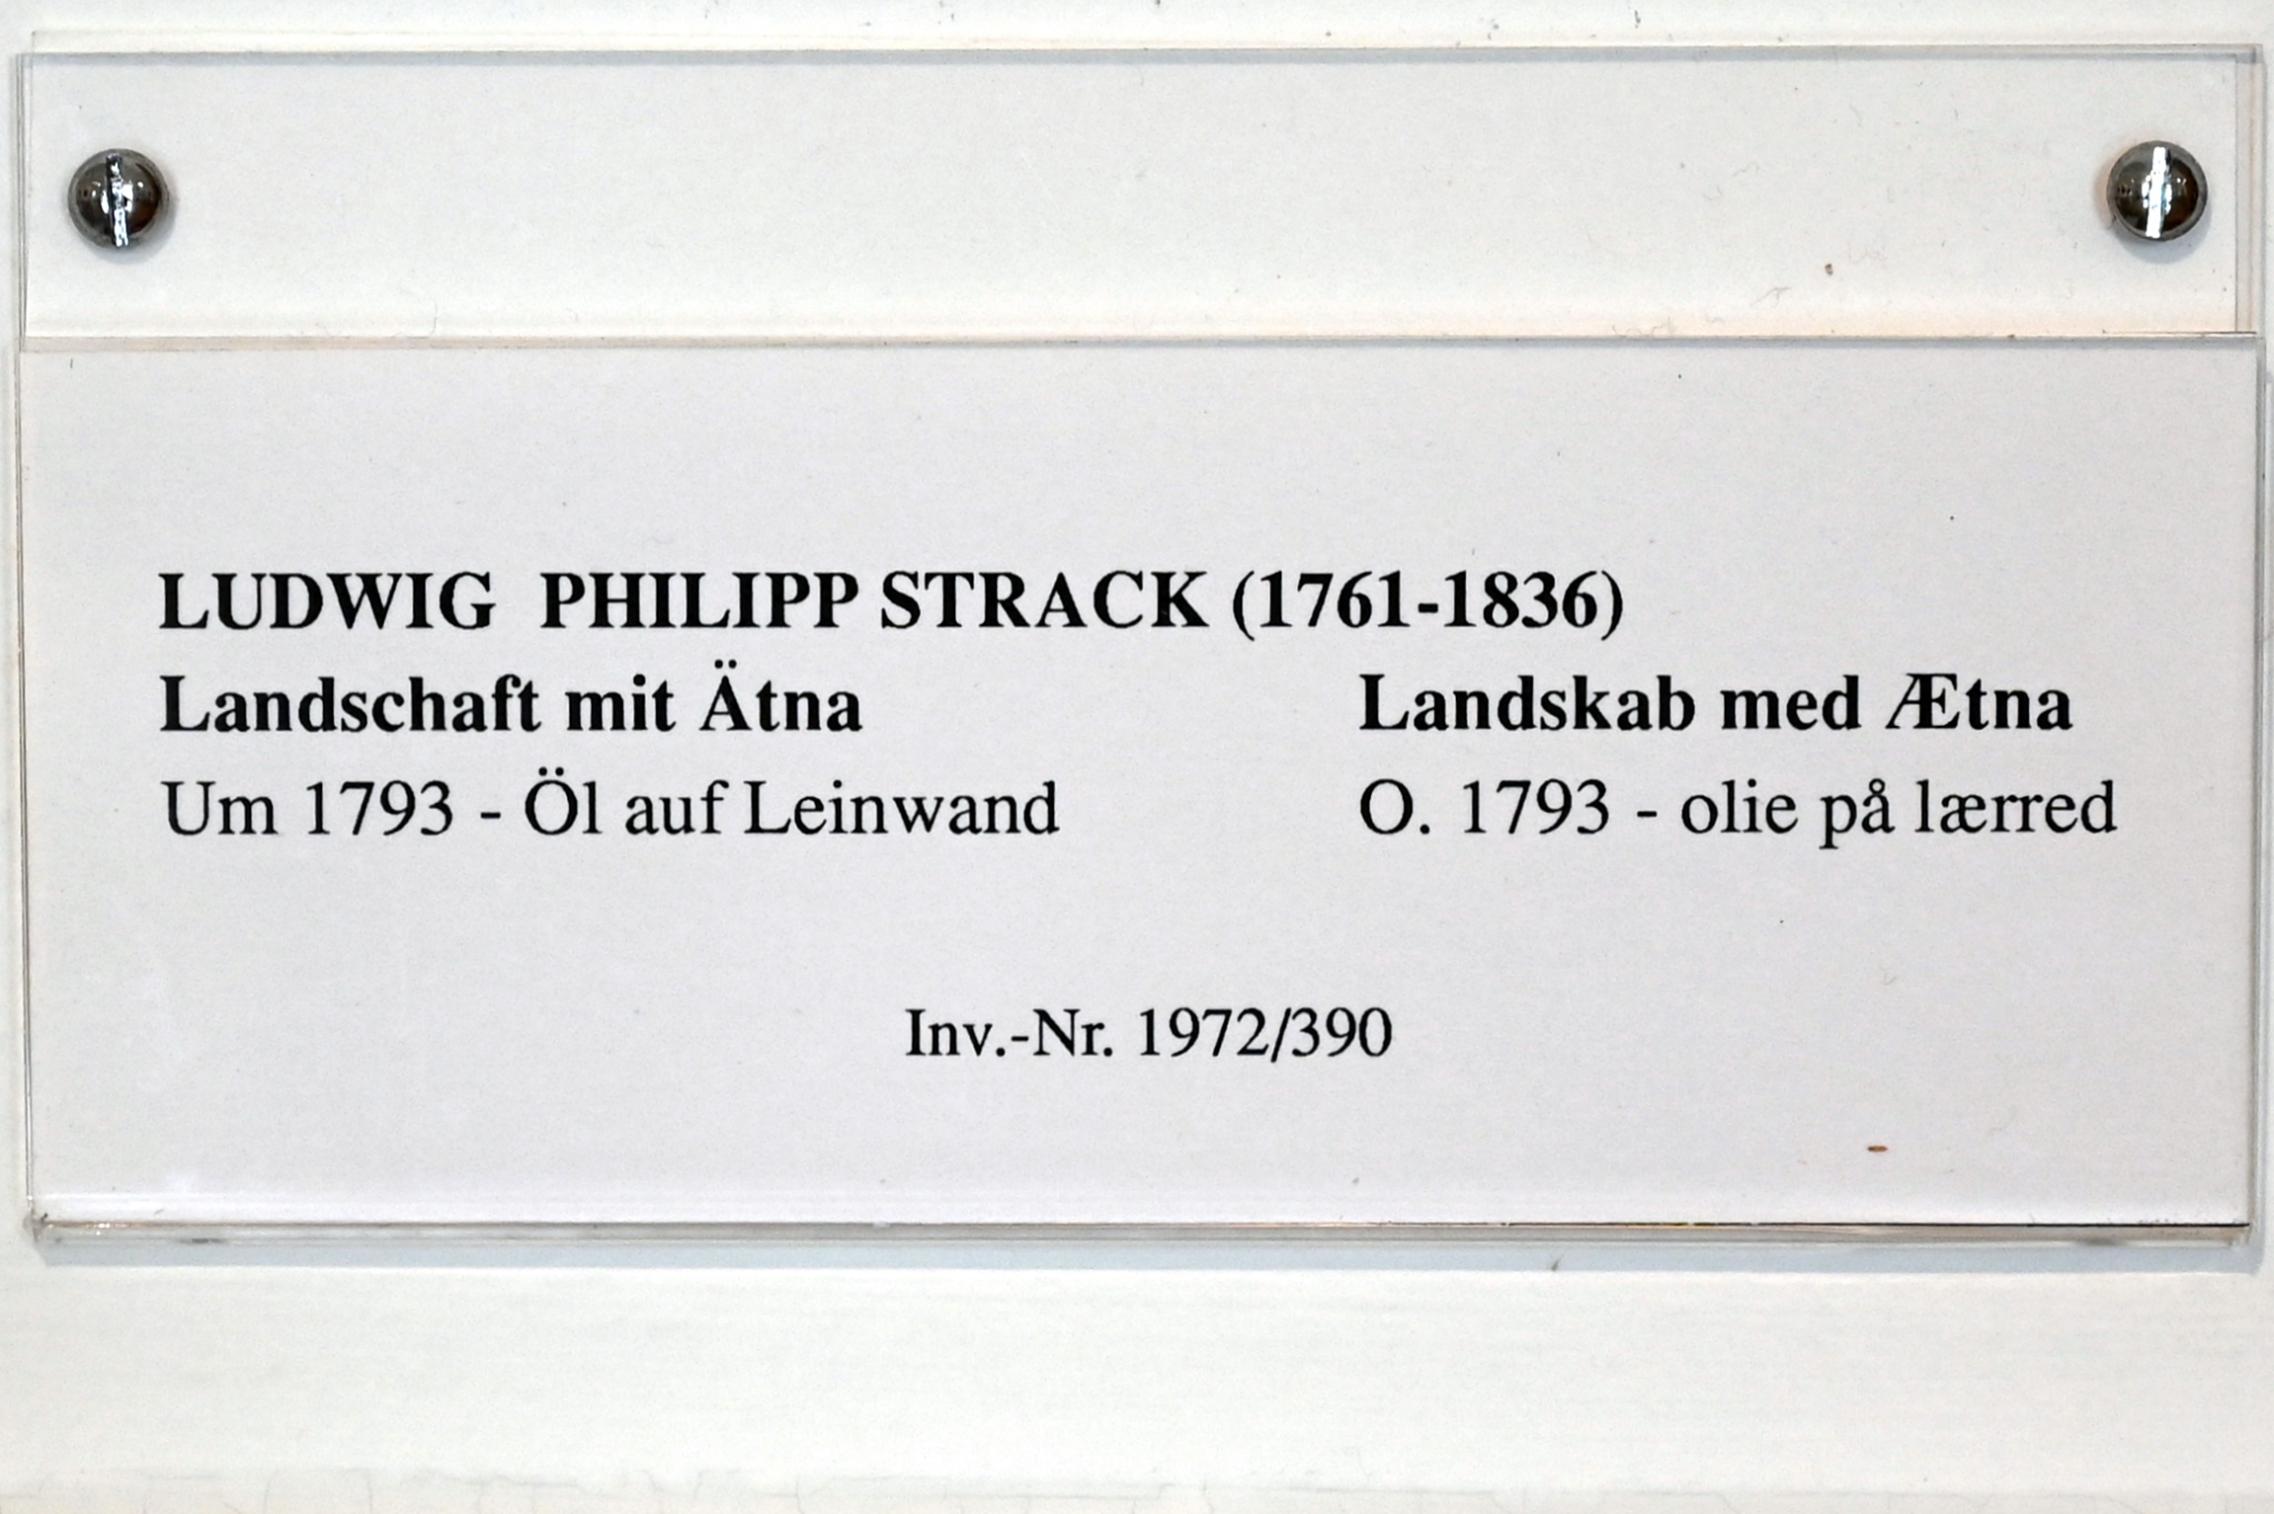 Ludwig Philipp Strack (1793–1795), Landschaft mit Ätna, Schleswig, Landesmuseum für Kunst und Kulturgeschichte, Saal 36, um 1793, Bild 2/2